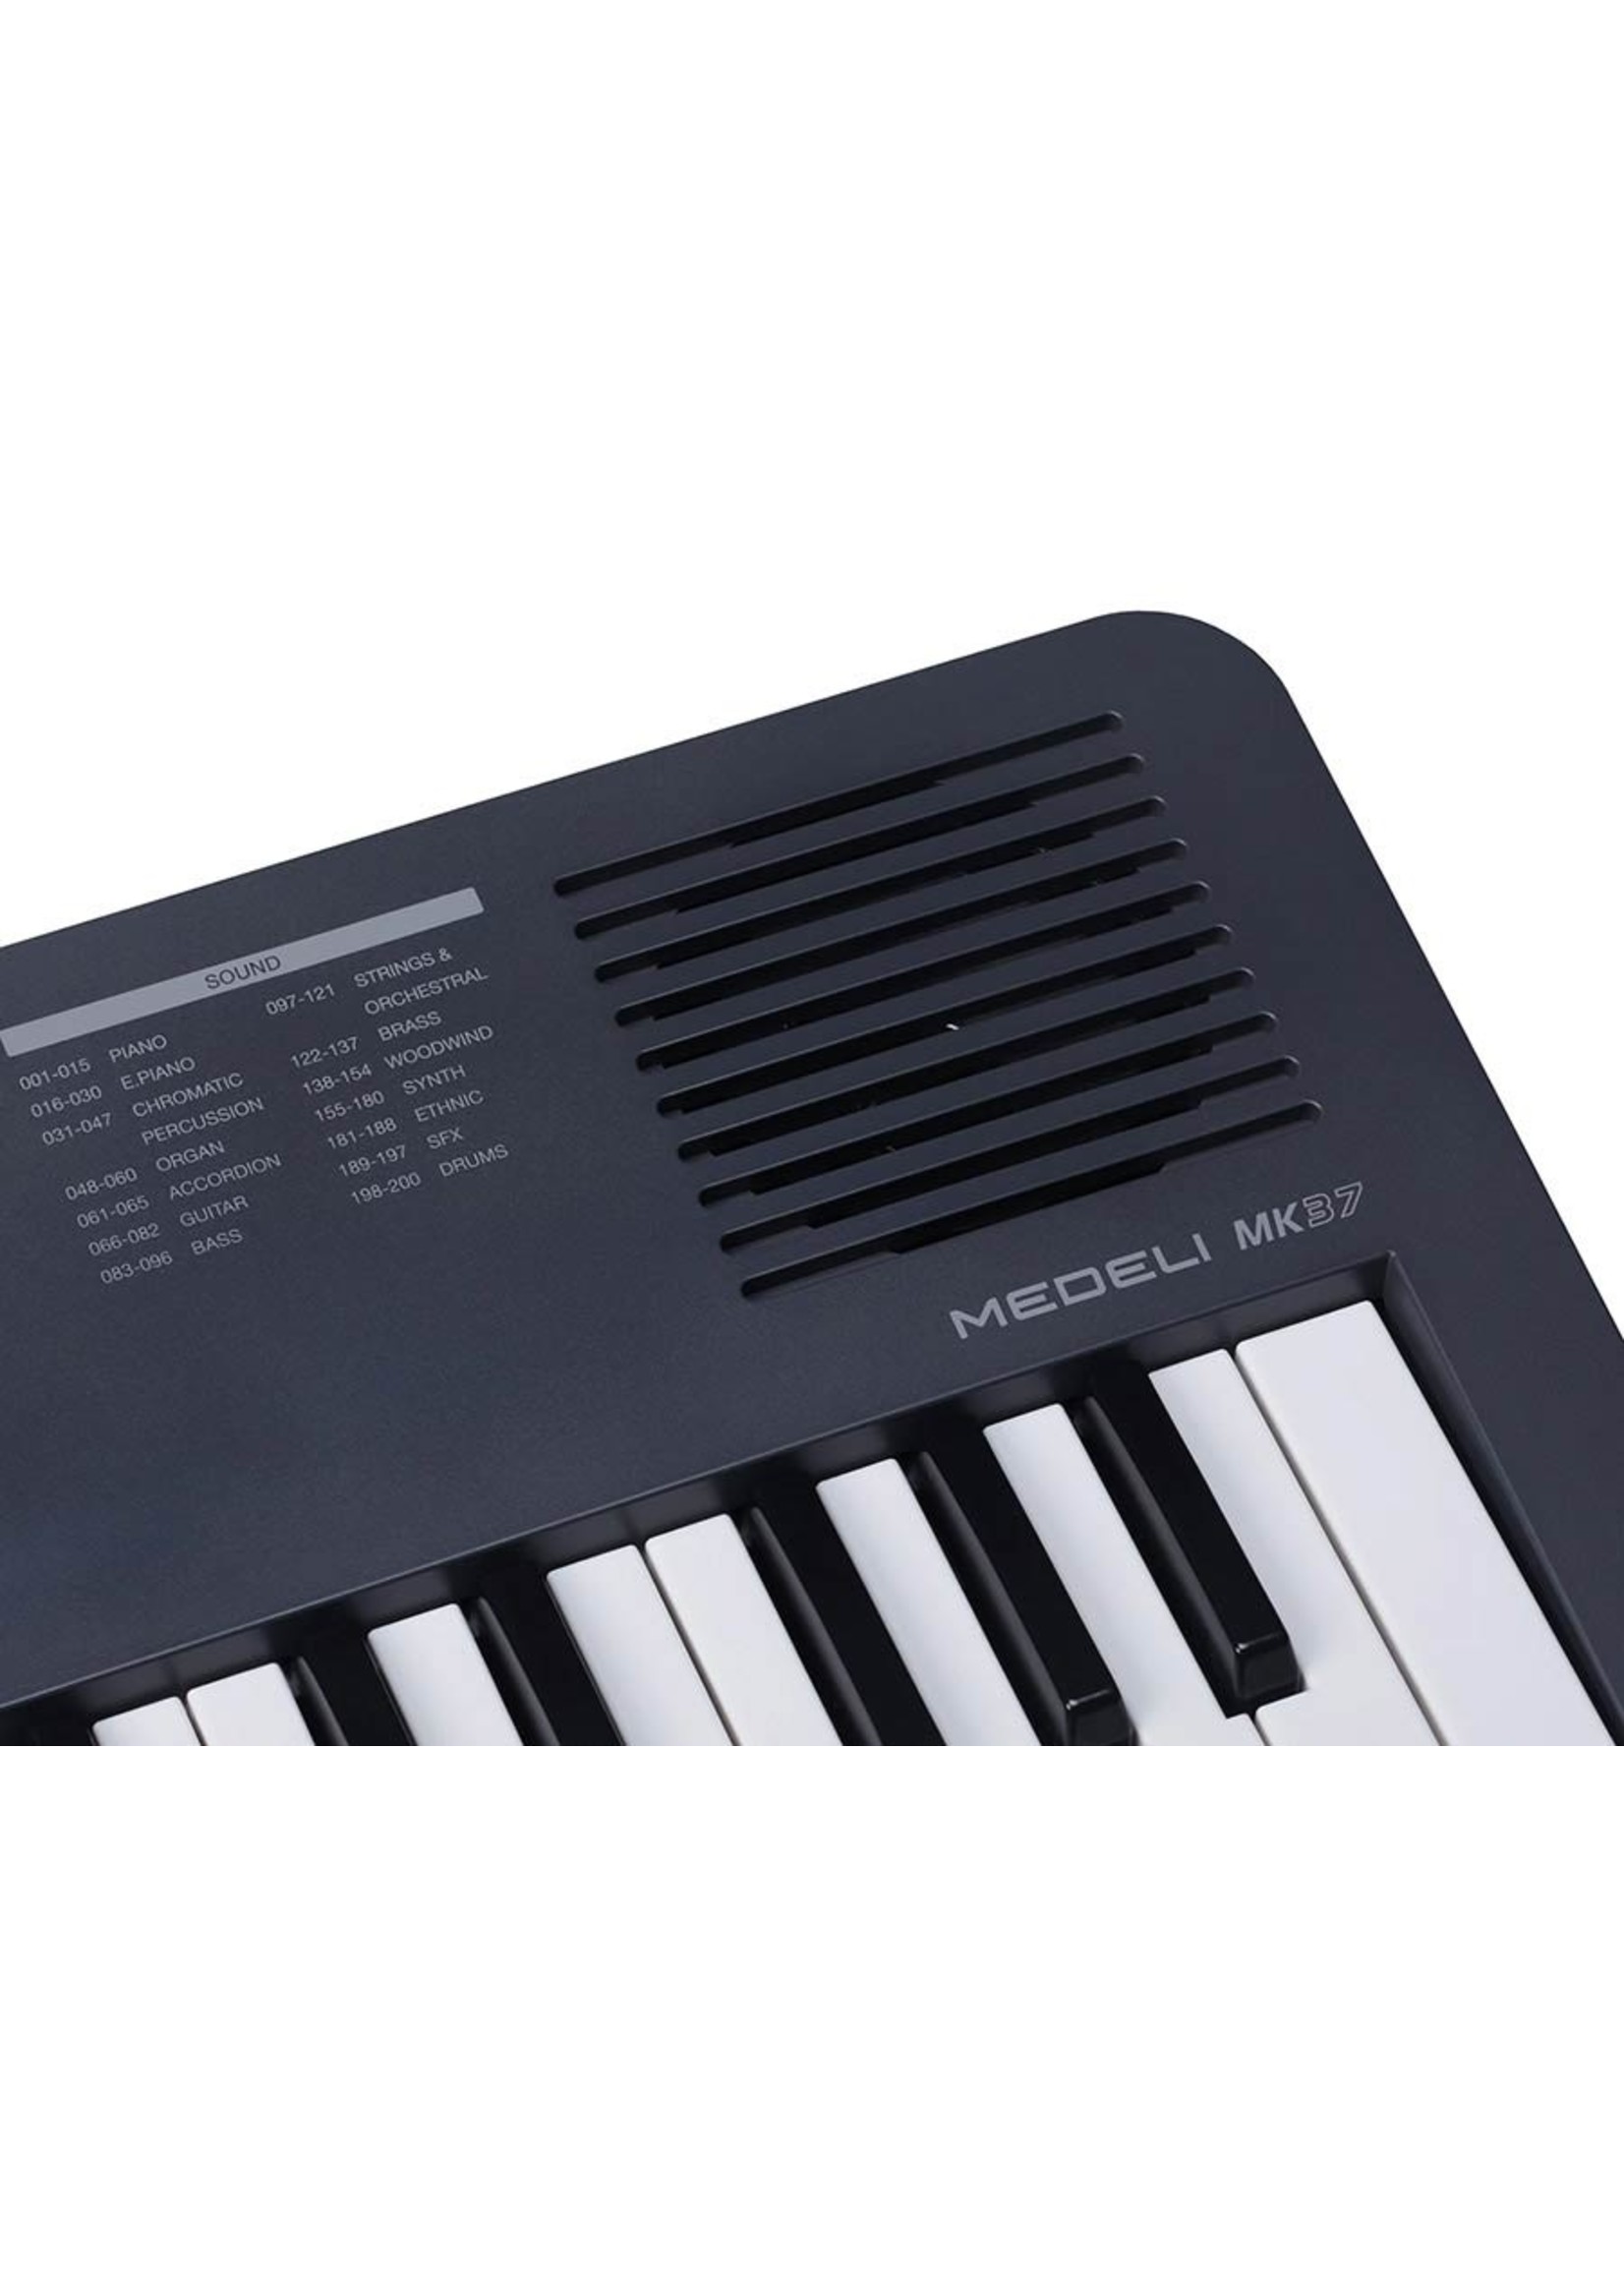 Medeli Medeli MK37 Nebula Series 37 Keyboard mini-size keys auto chord